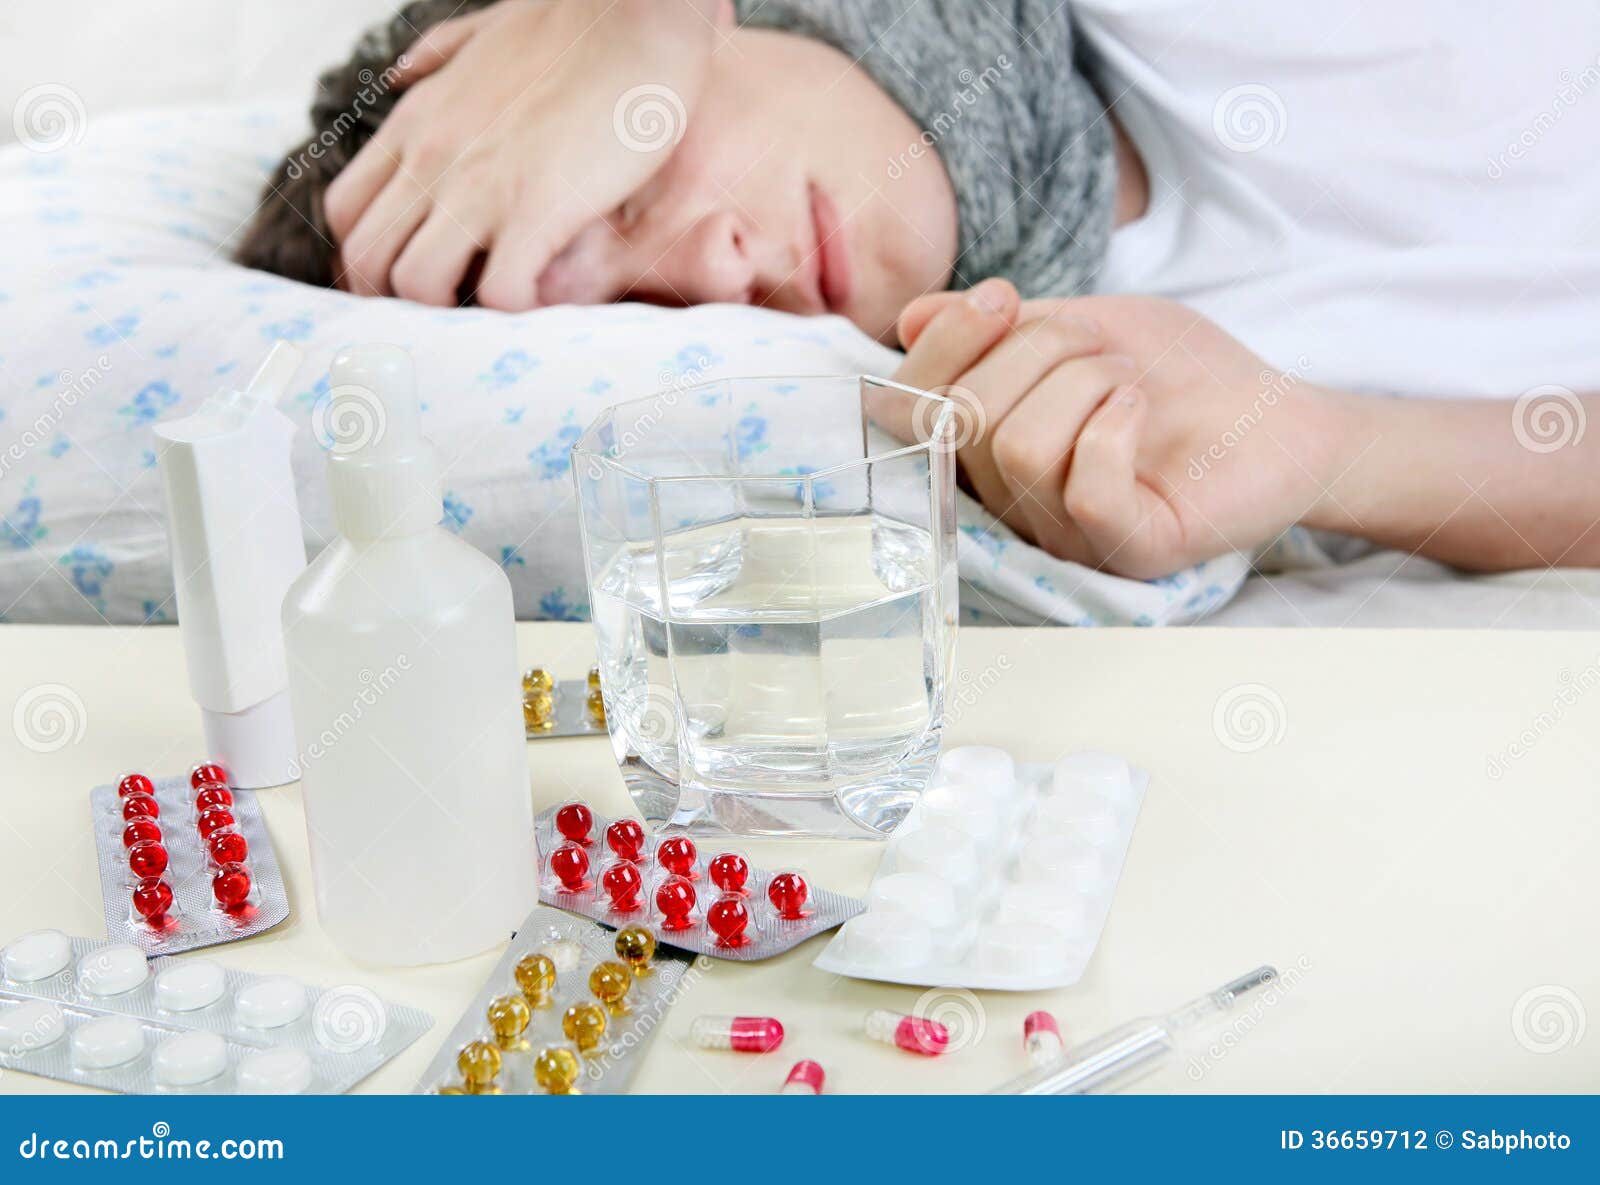 Почему лекарства не помогают. Больной человек куча лекарств. Снотворные фото. Таблетки около больного. Куча лекарств от гриппа.